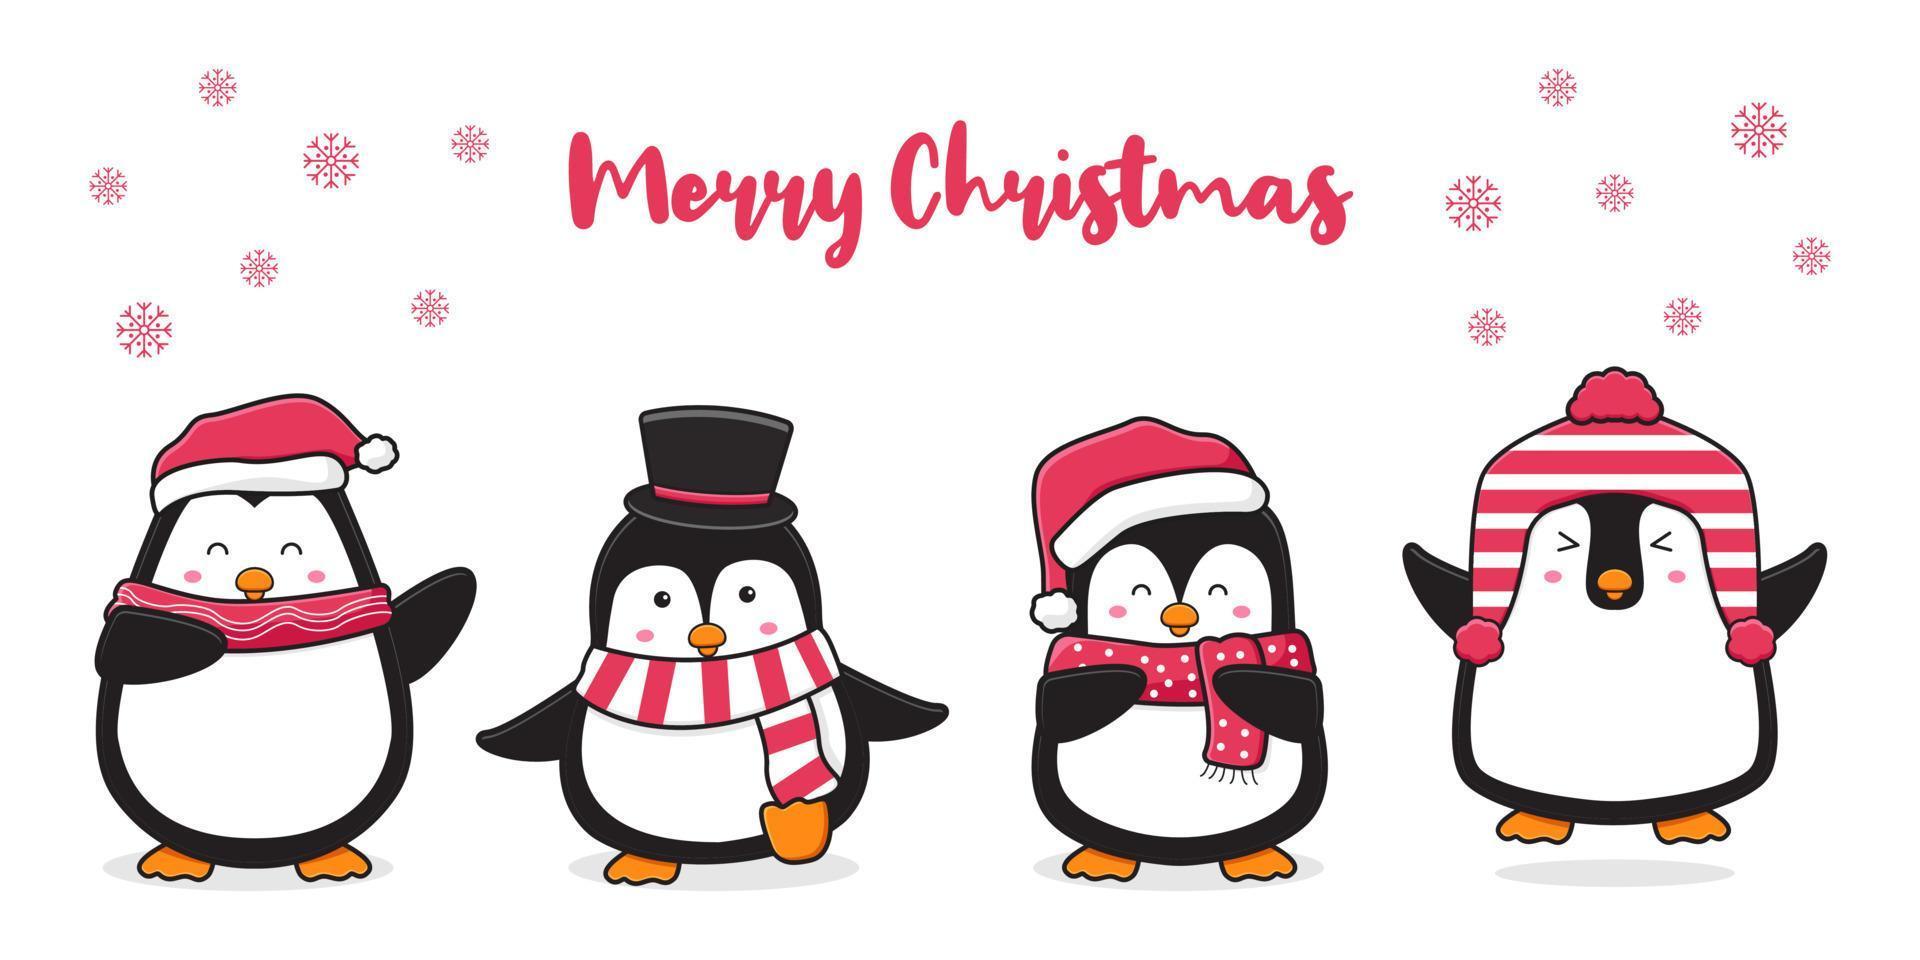 Linda familia de pingüinos saludando feliz navidad dibujos animados doodle tarjeta ilustración de fondo vector